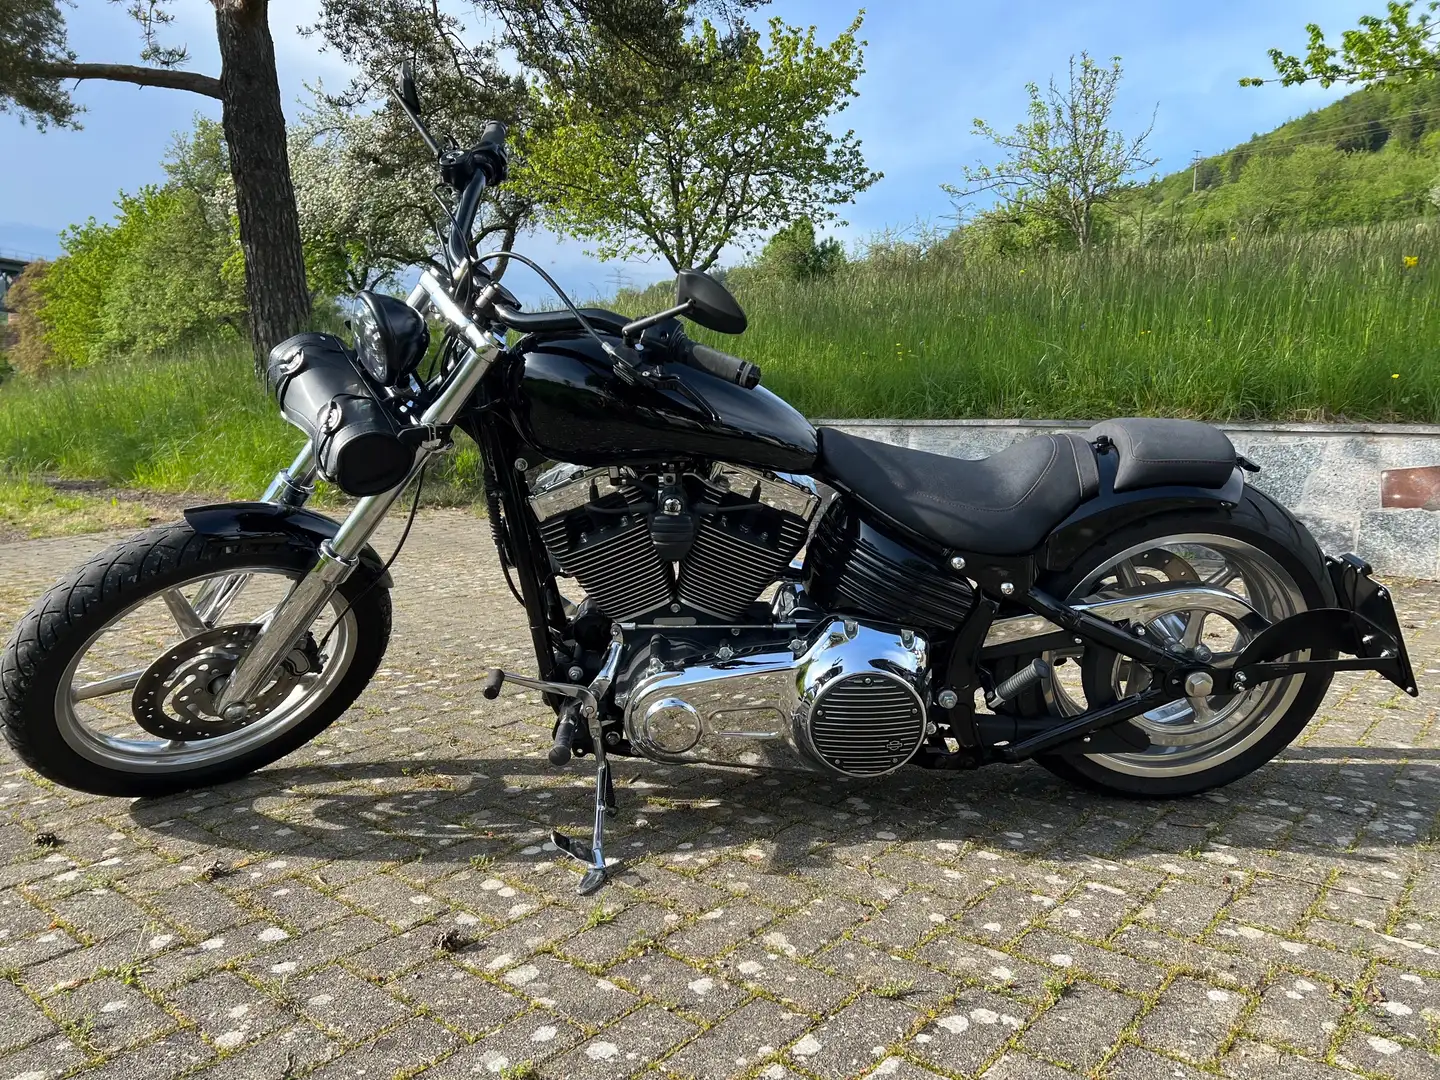 Harley-Davidson Softail - 1